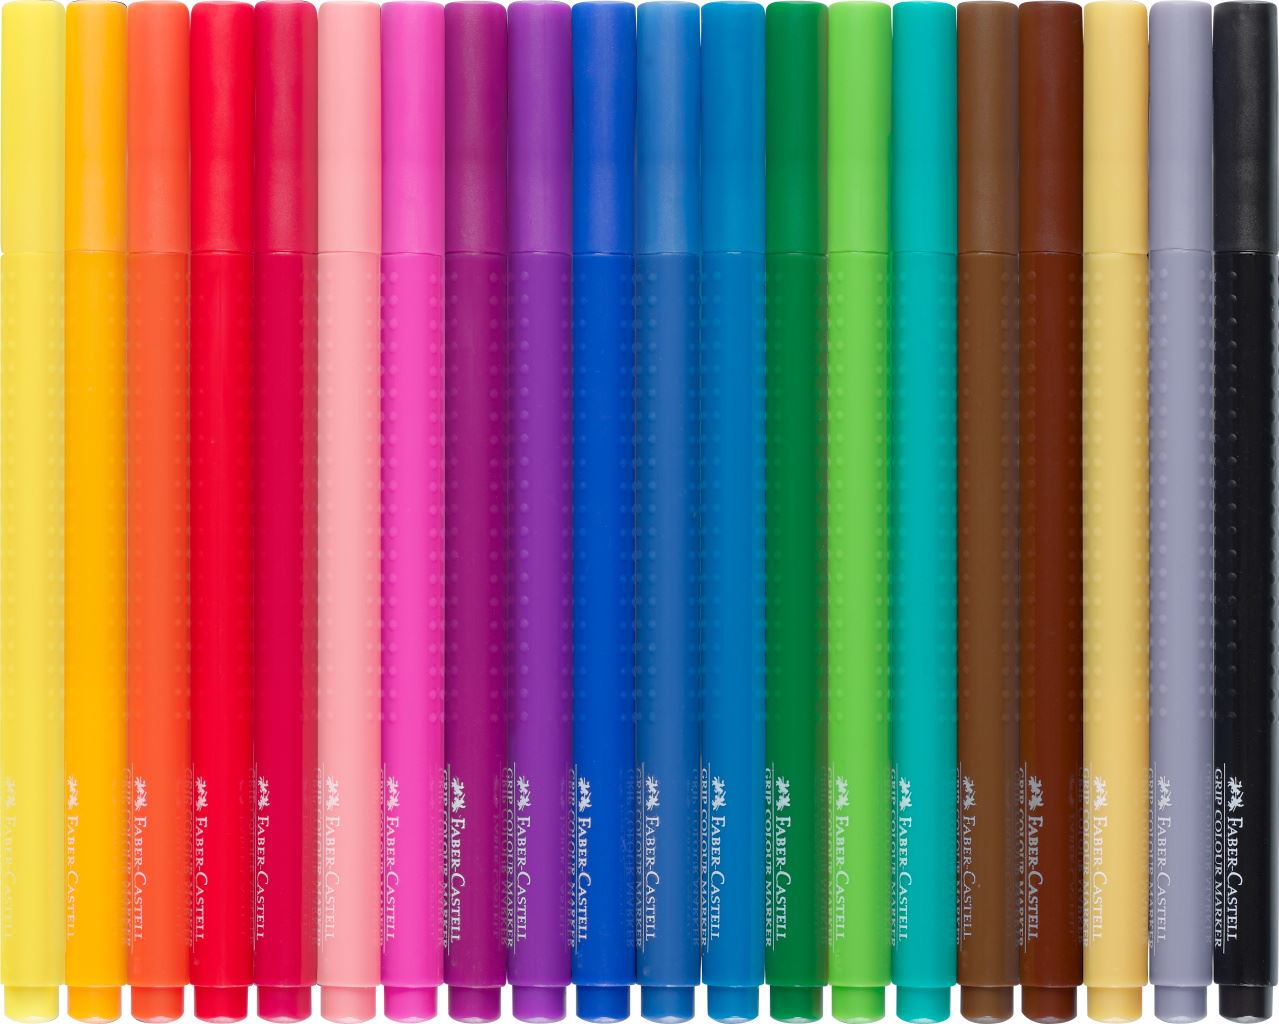 Faber-Castell - Fixy Colour Grip, plastové pouzdro 20 ks